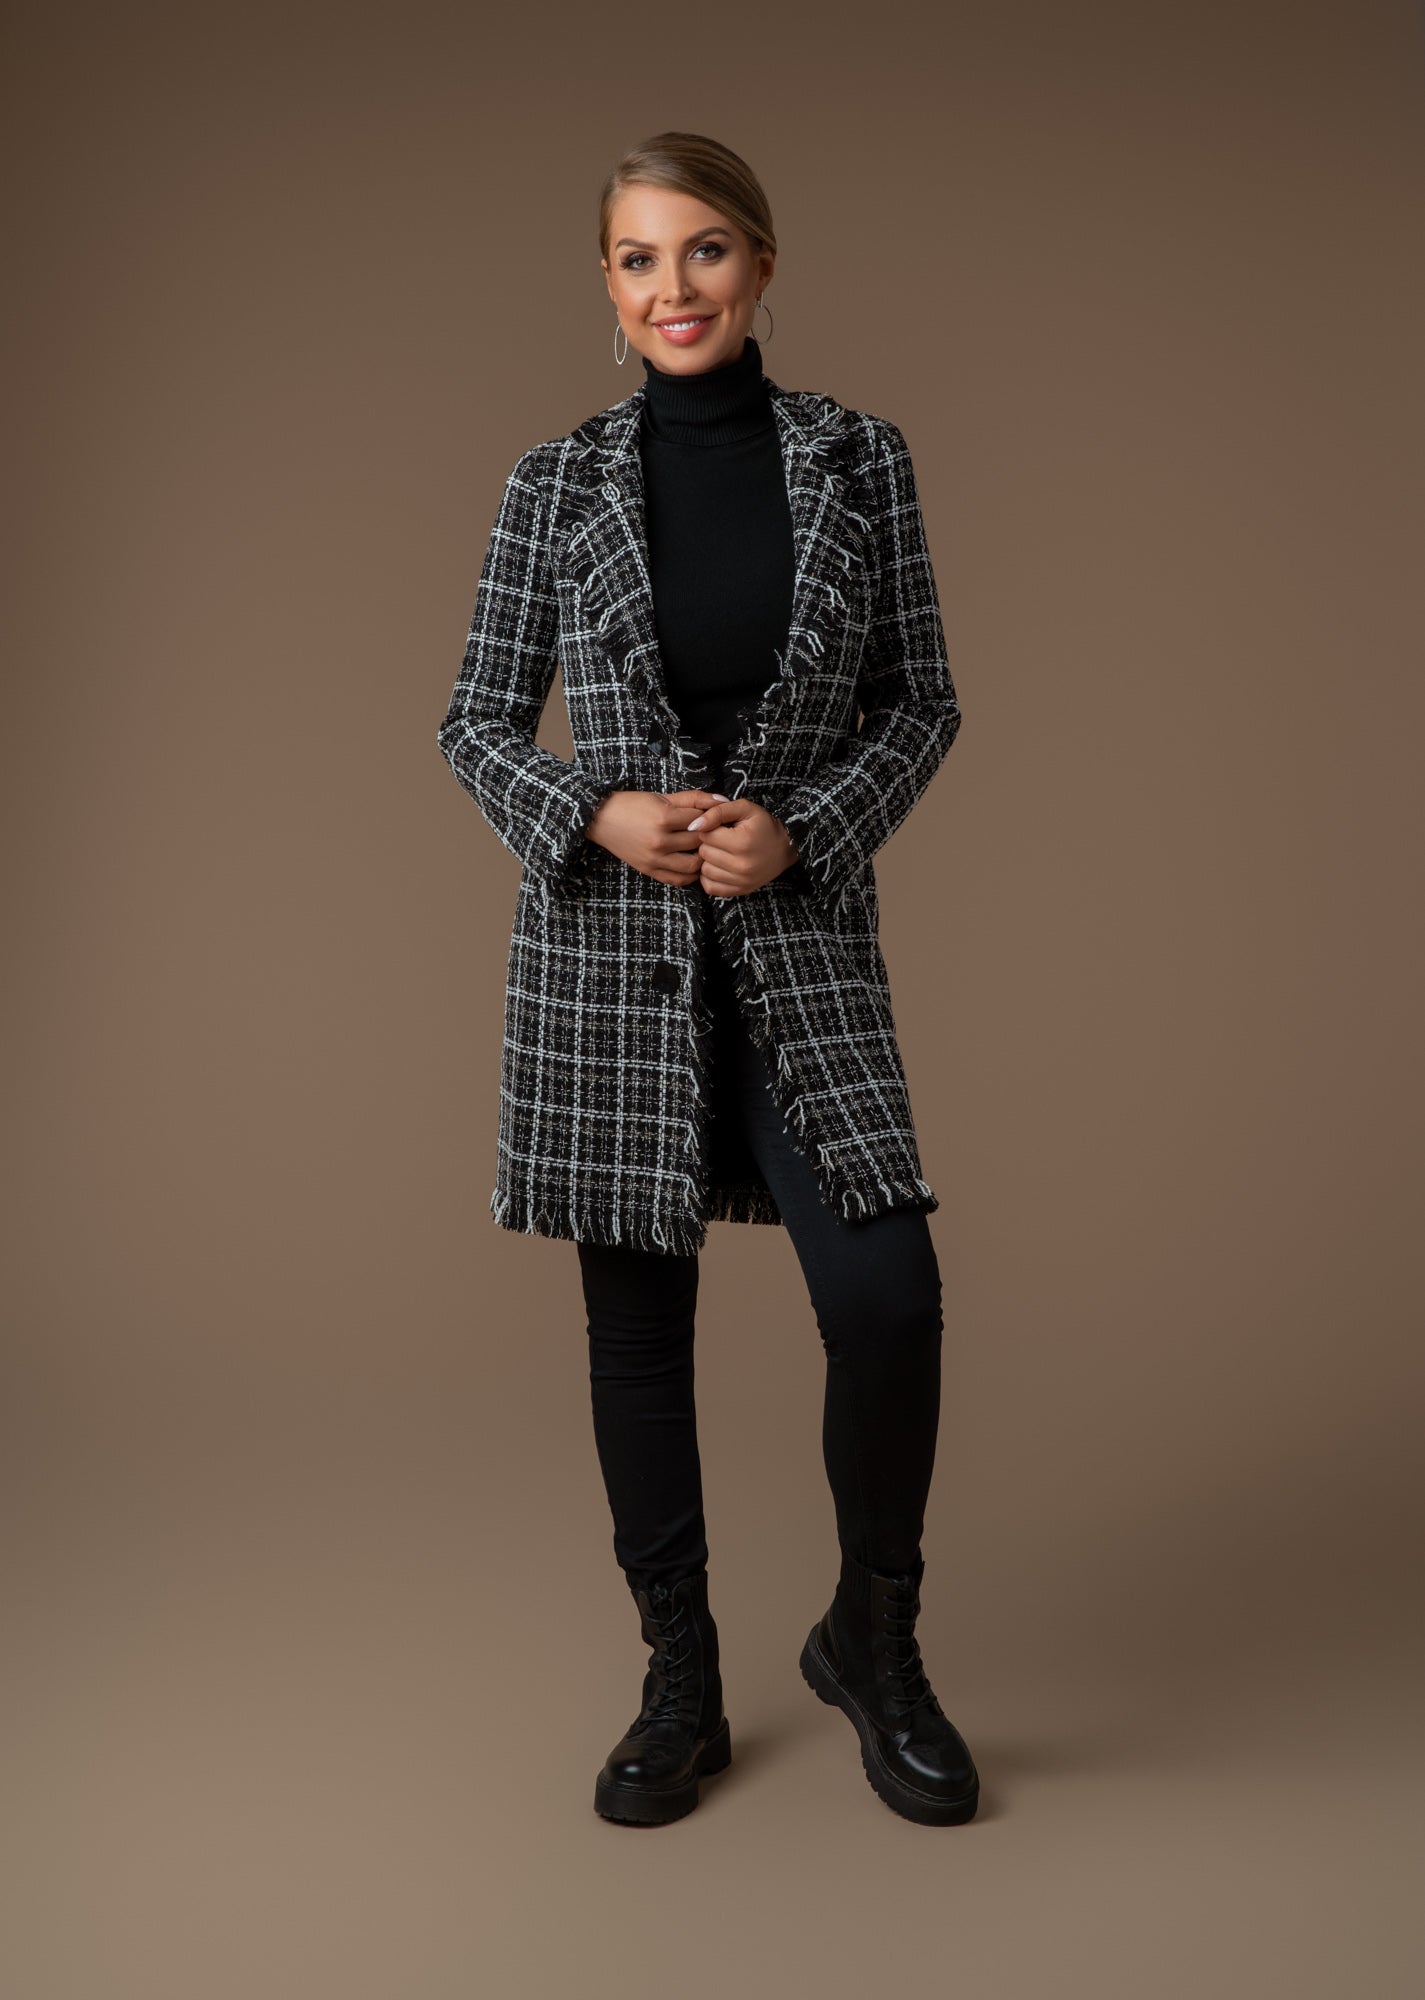 Tweedheart Mantel in Schwarz,Grau,weiß mit Fransen und Druckknöpfe Ganzörperfoto